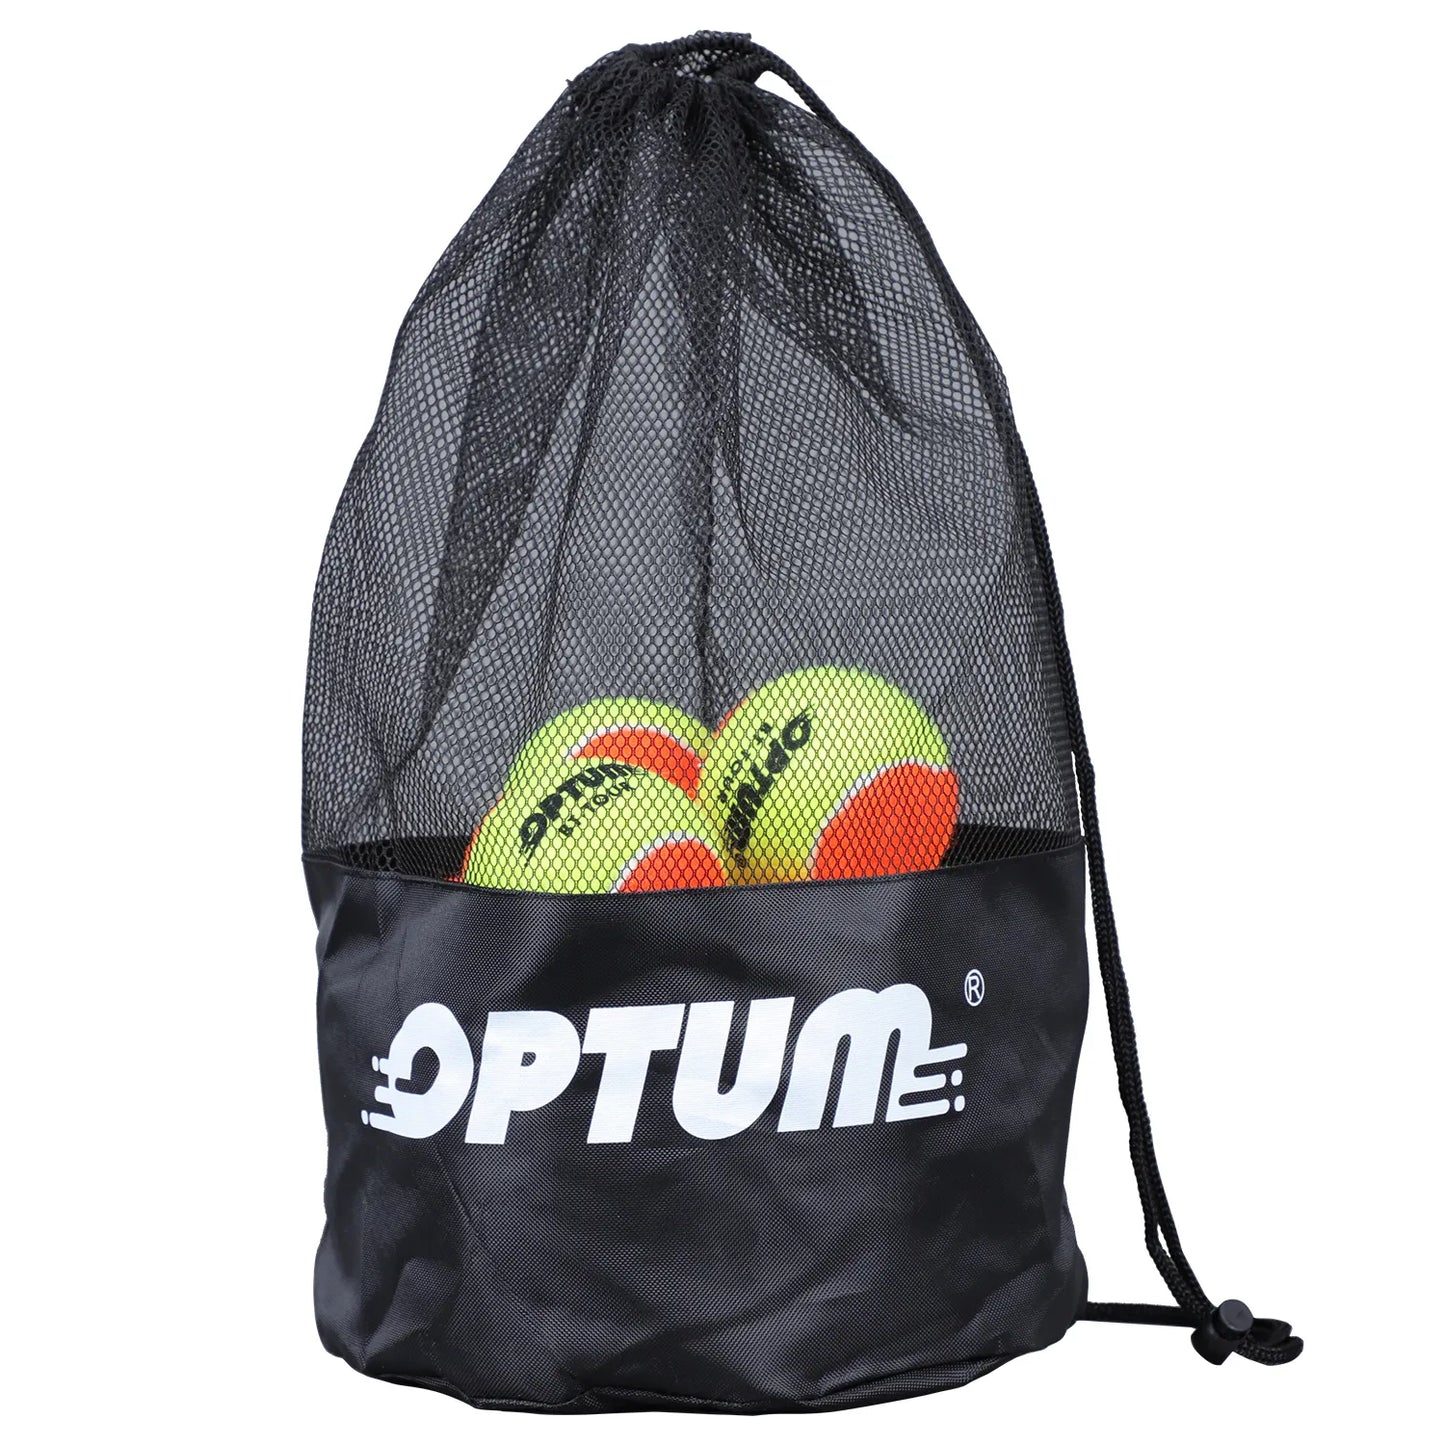 12pcs Beach Tennis Balls & Shoulder Bag